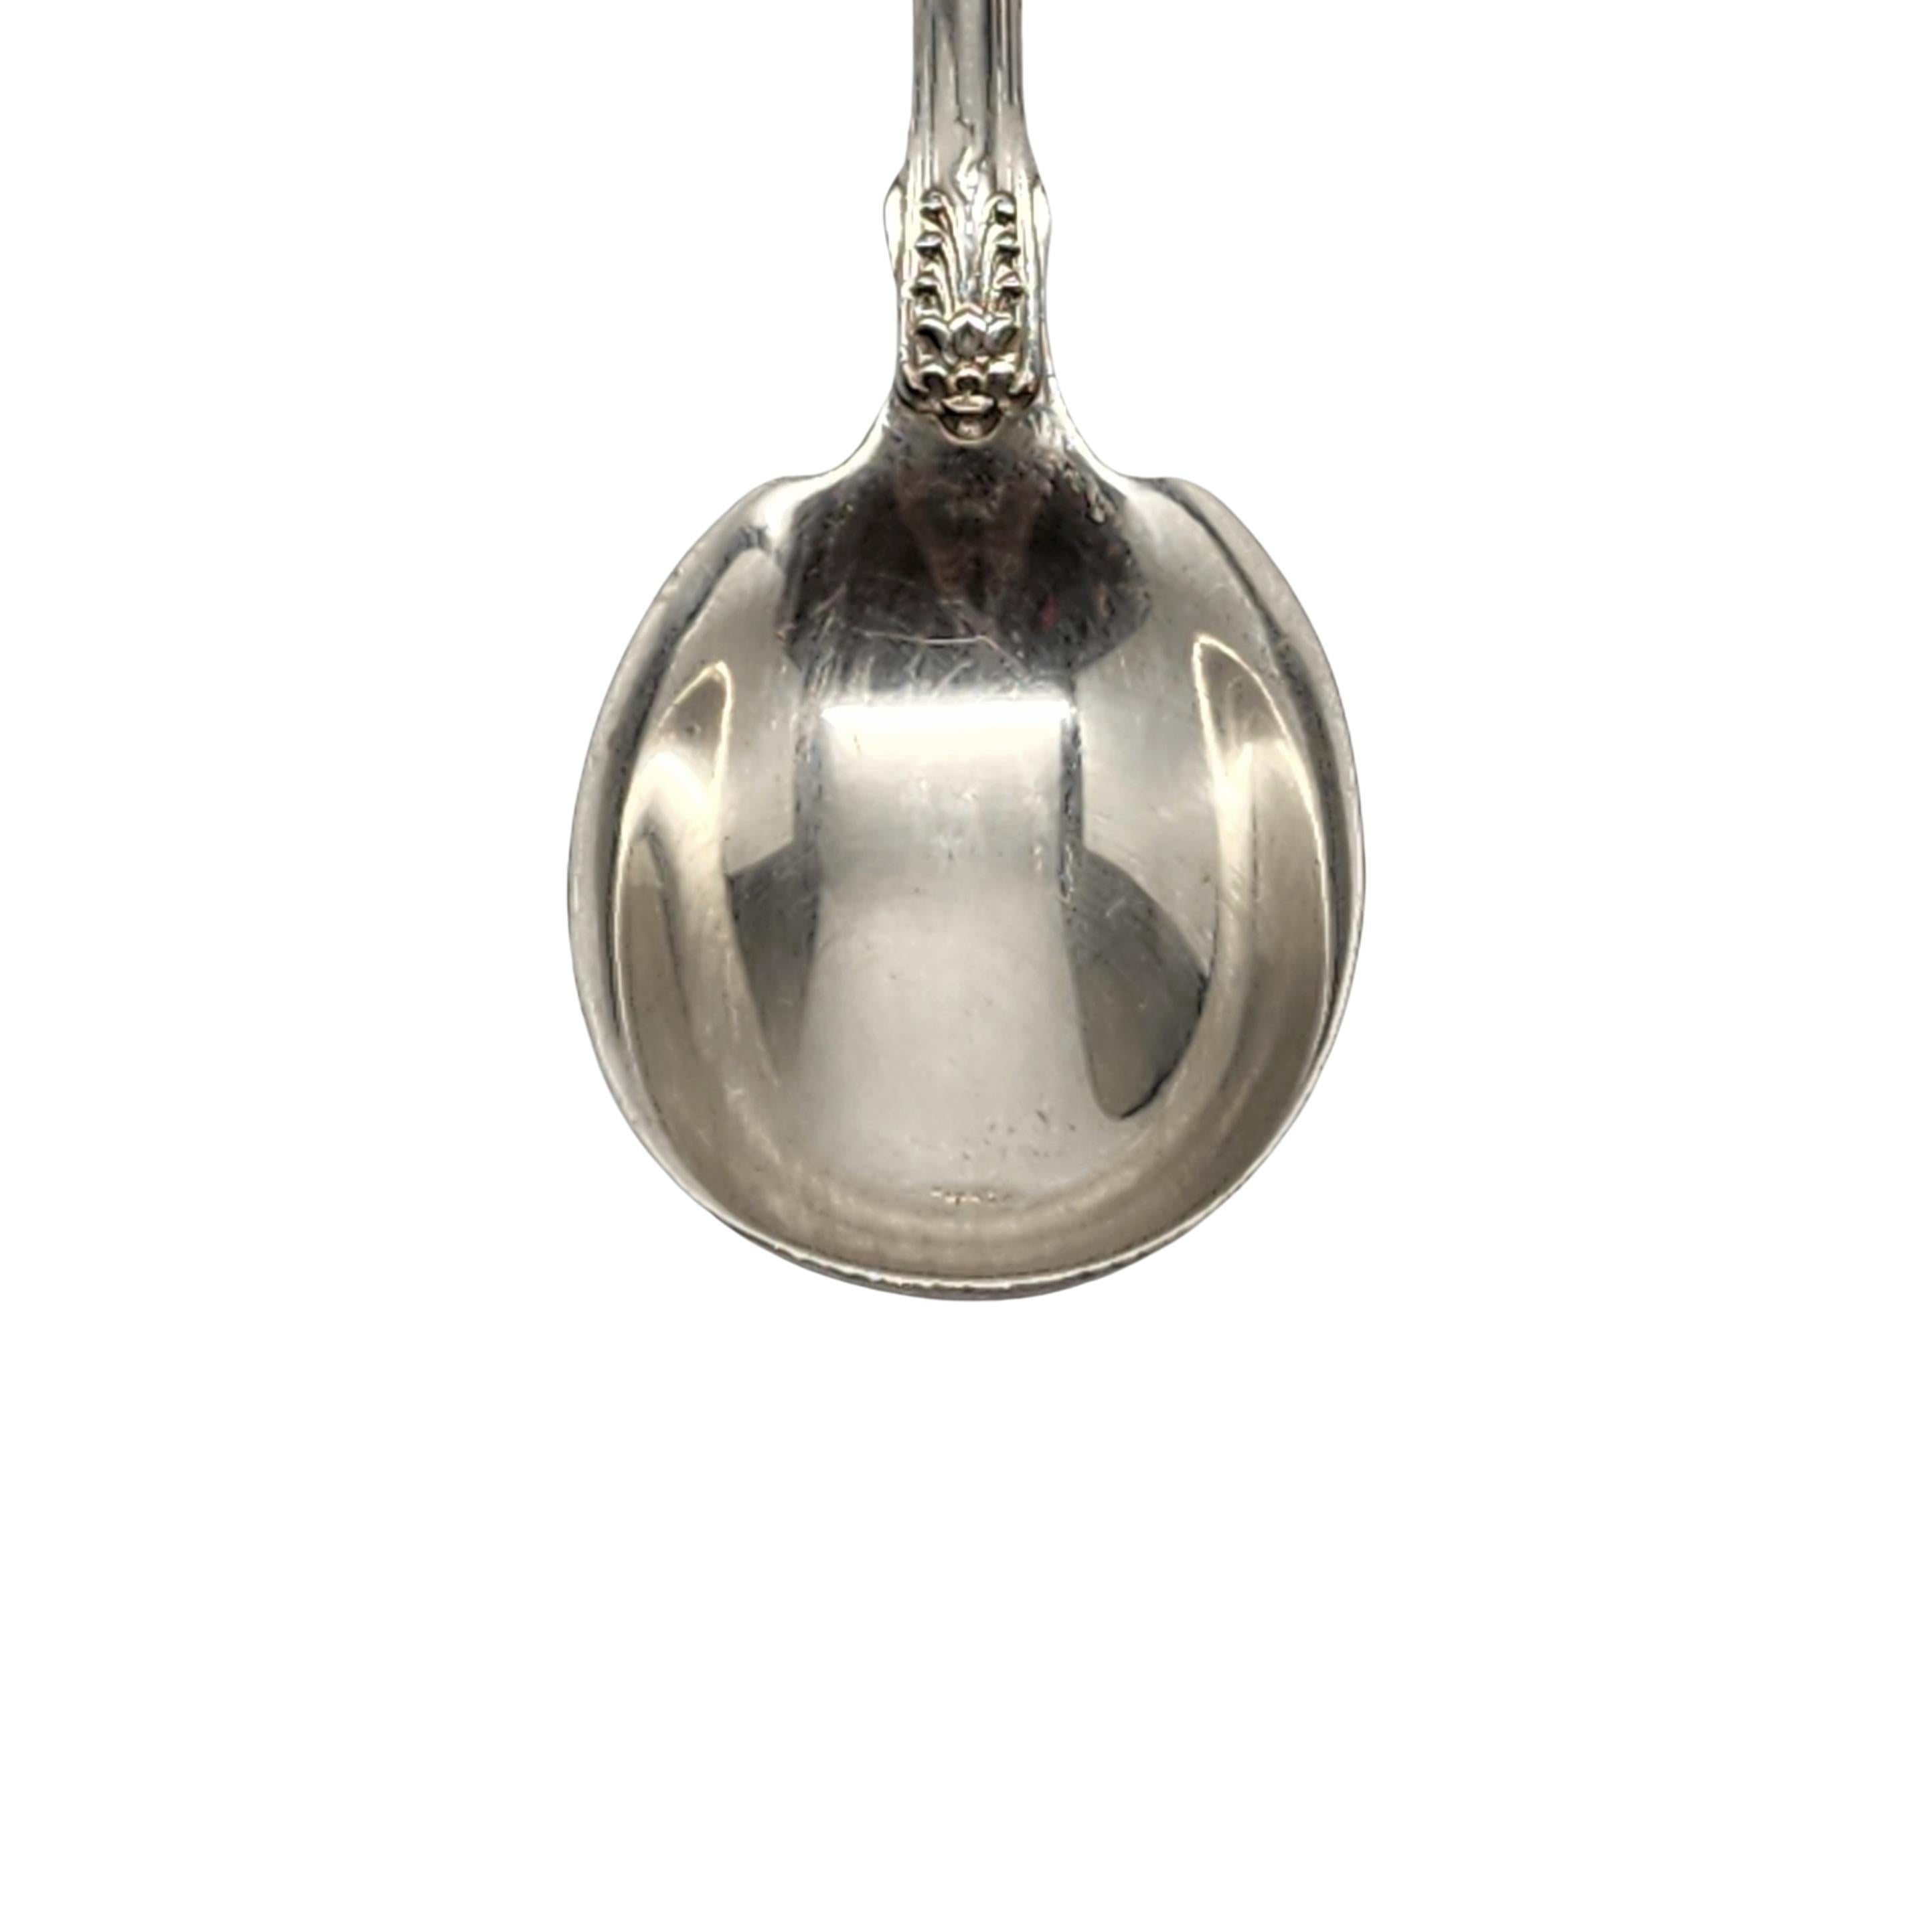 Tiffany & Co English King Sterling Silver Sugar Spoon 5 5/8